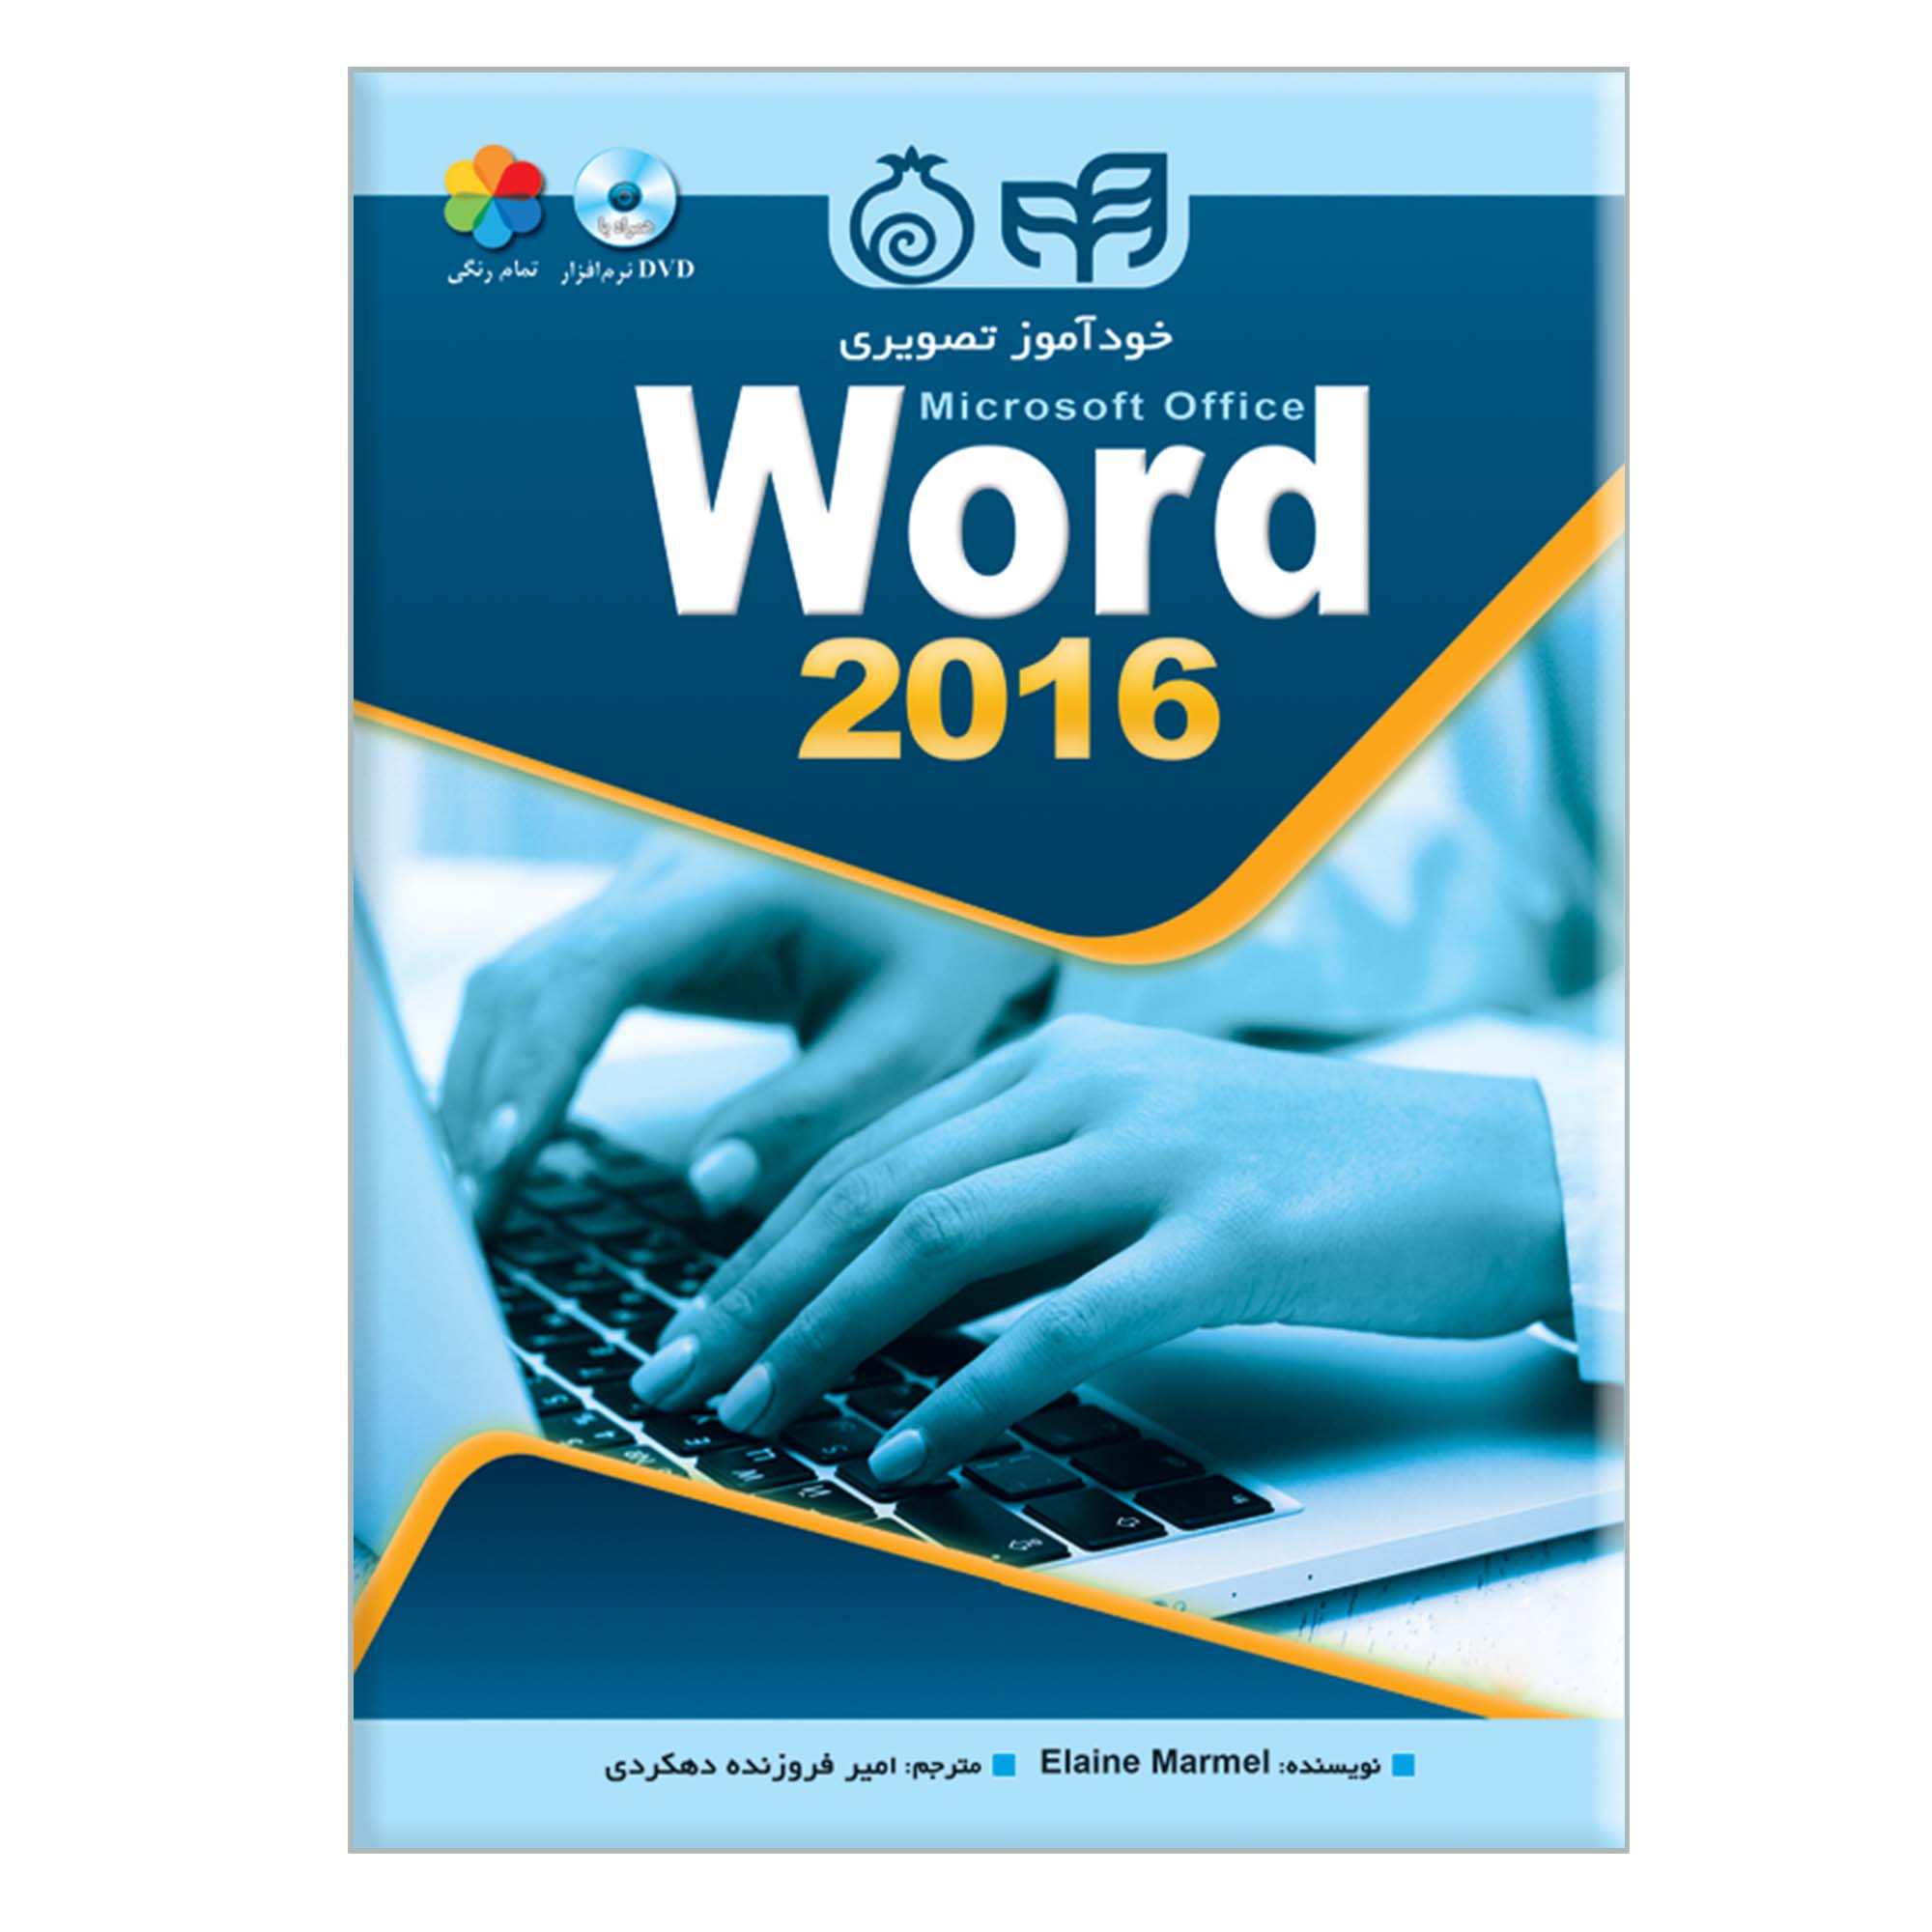 کتاب خودآموز تصویری Microsoft Office Word 2016 اثر Elaine Marmel نشر کیان